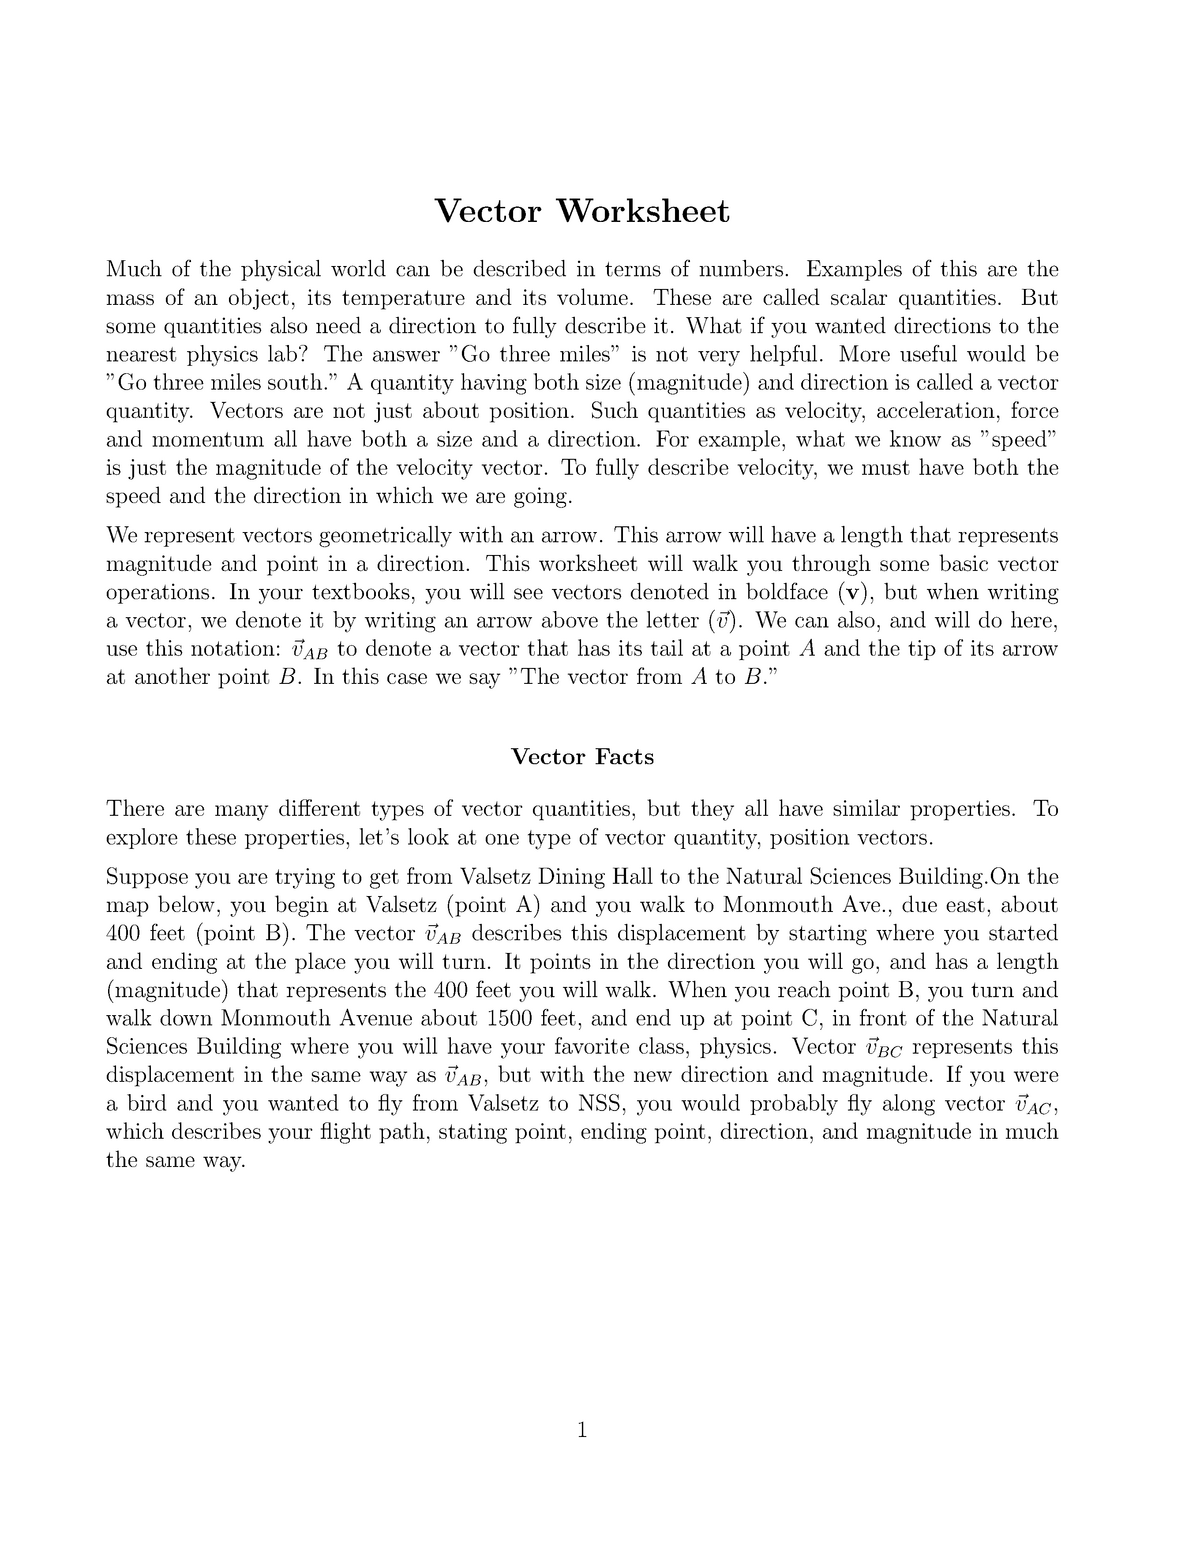 Vector Worksheet 2 - Practice Questions - StuDocu